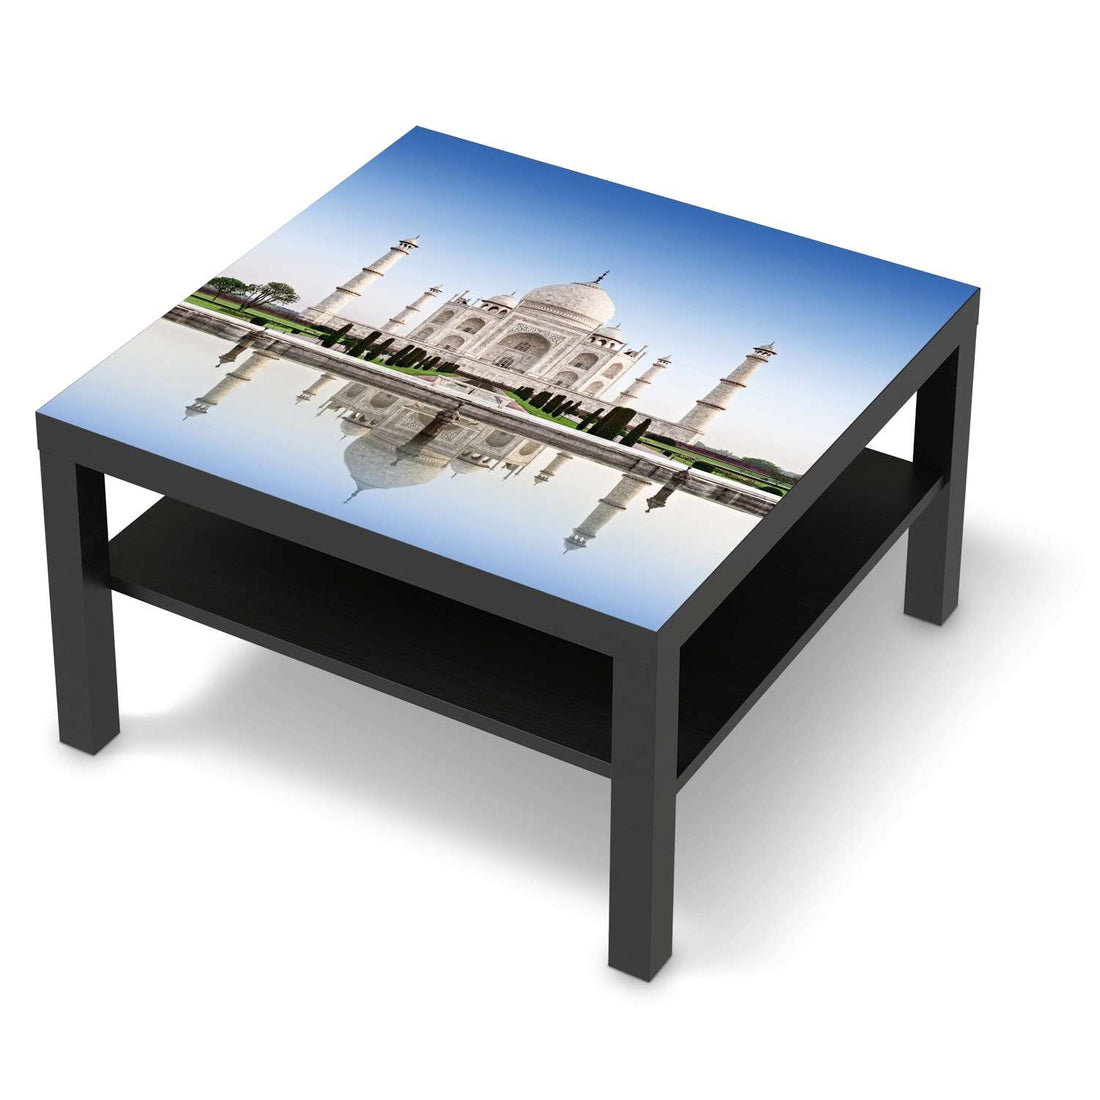 Selbstklebende Folie Taj Mahal - IKEA Lack Tisch 78x78 cm - schwarz